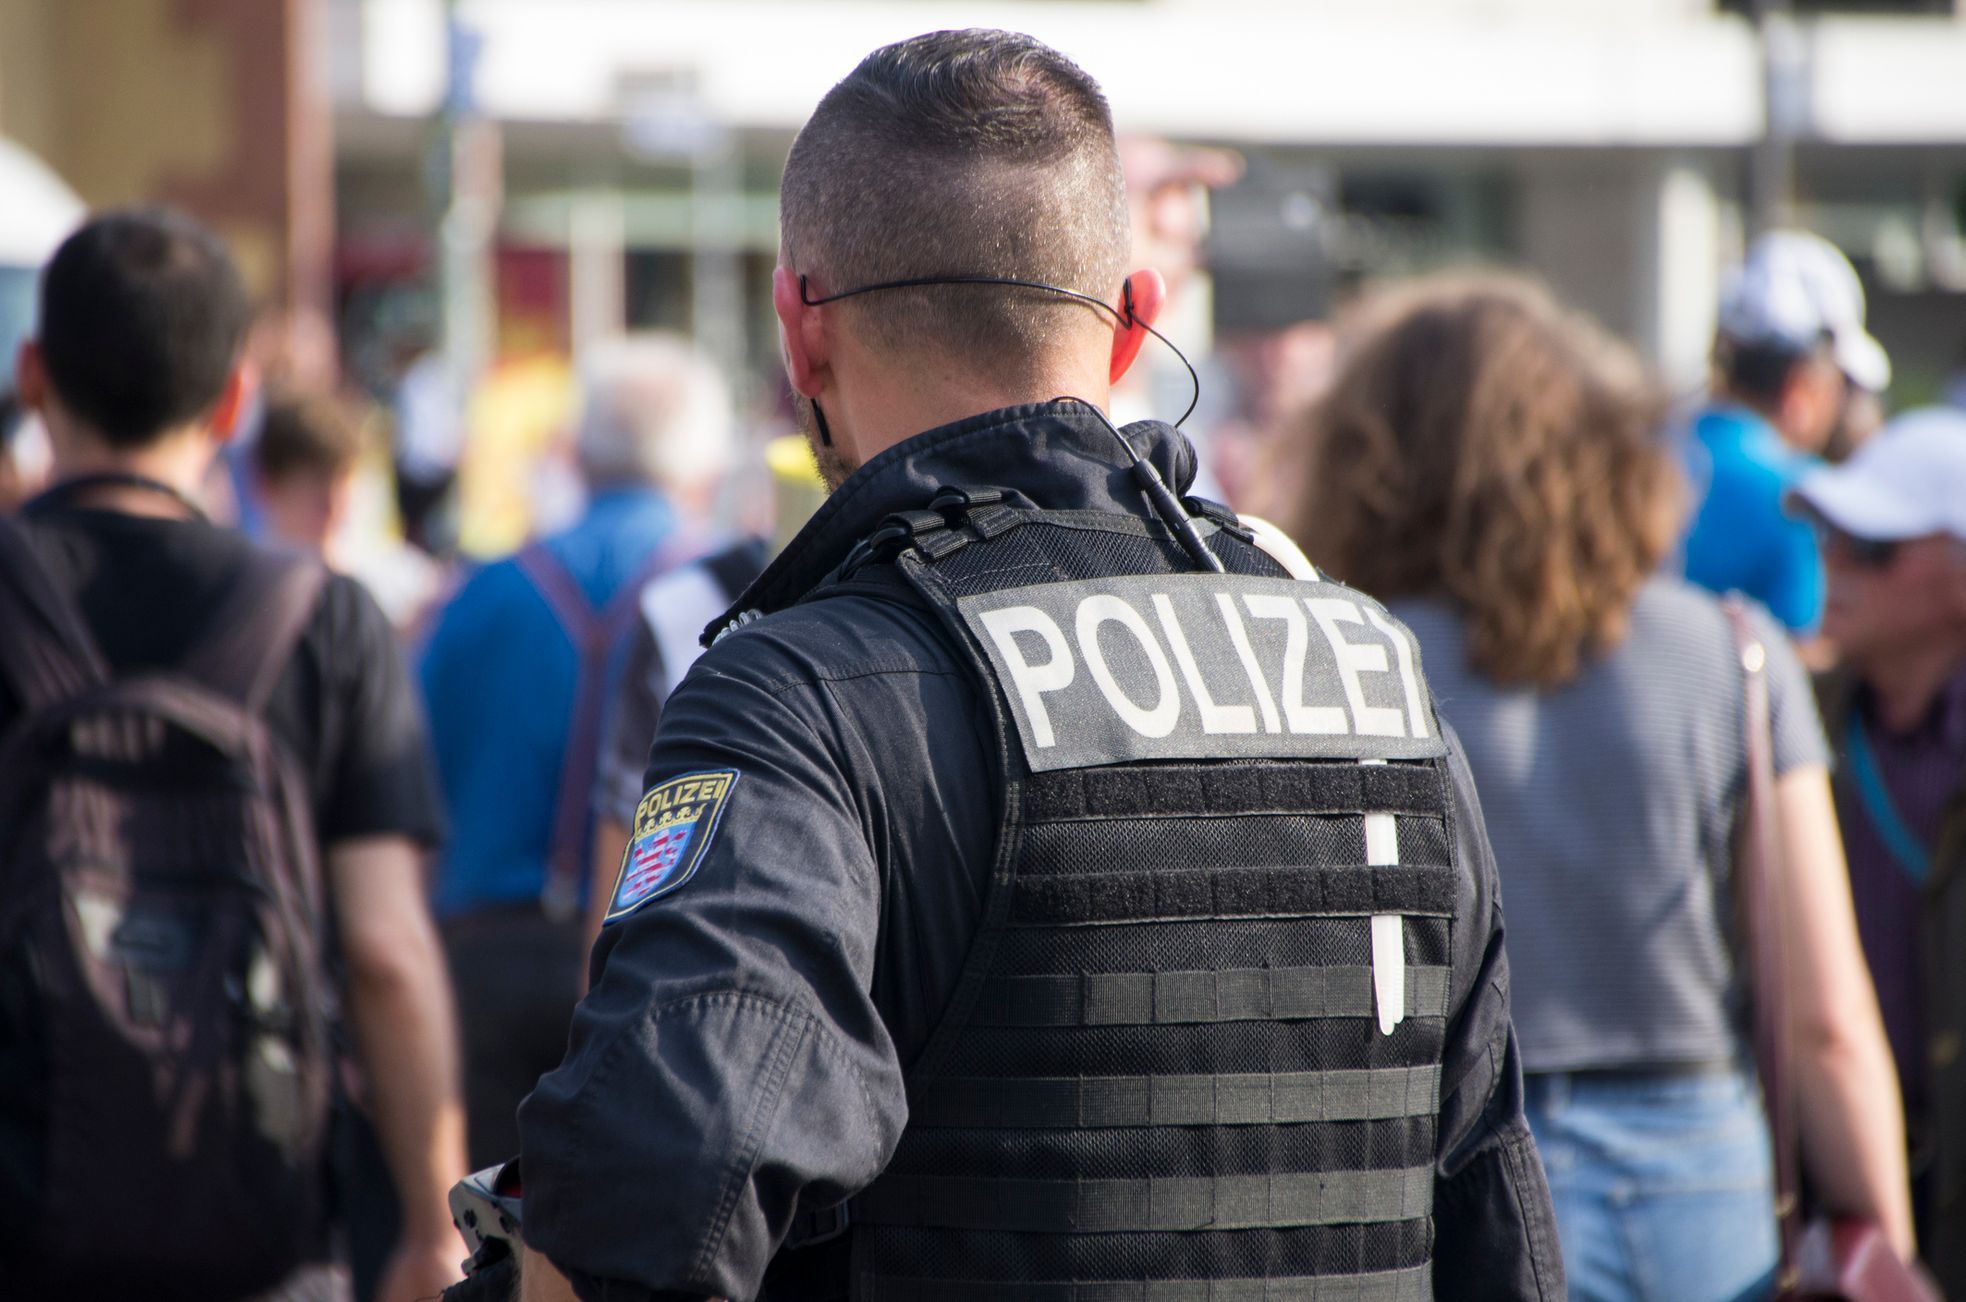 Skandal in Deutschland.  Sensible Daten über Frauen sickern bei der Polizei durch und Extremisten bedrohen sie